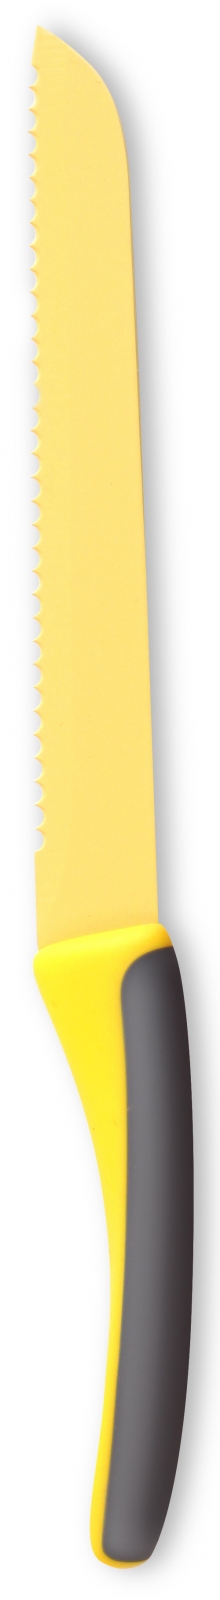 Nóż do chleba Fresco żółty Kulig